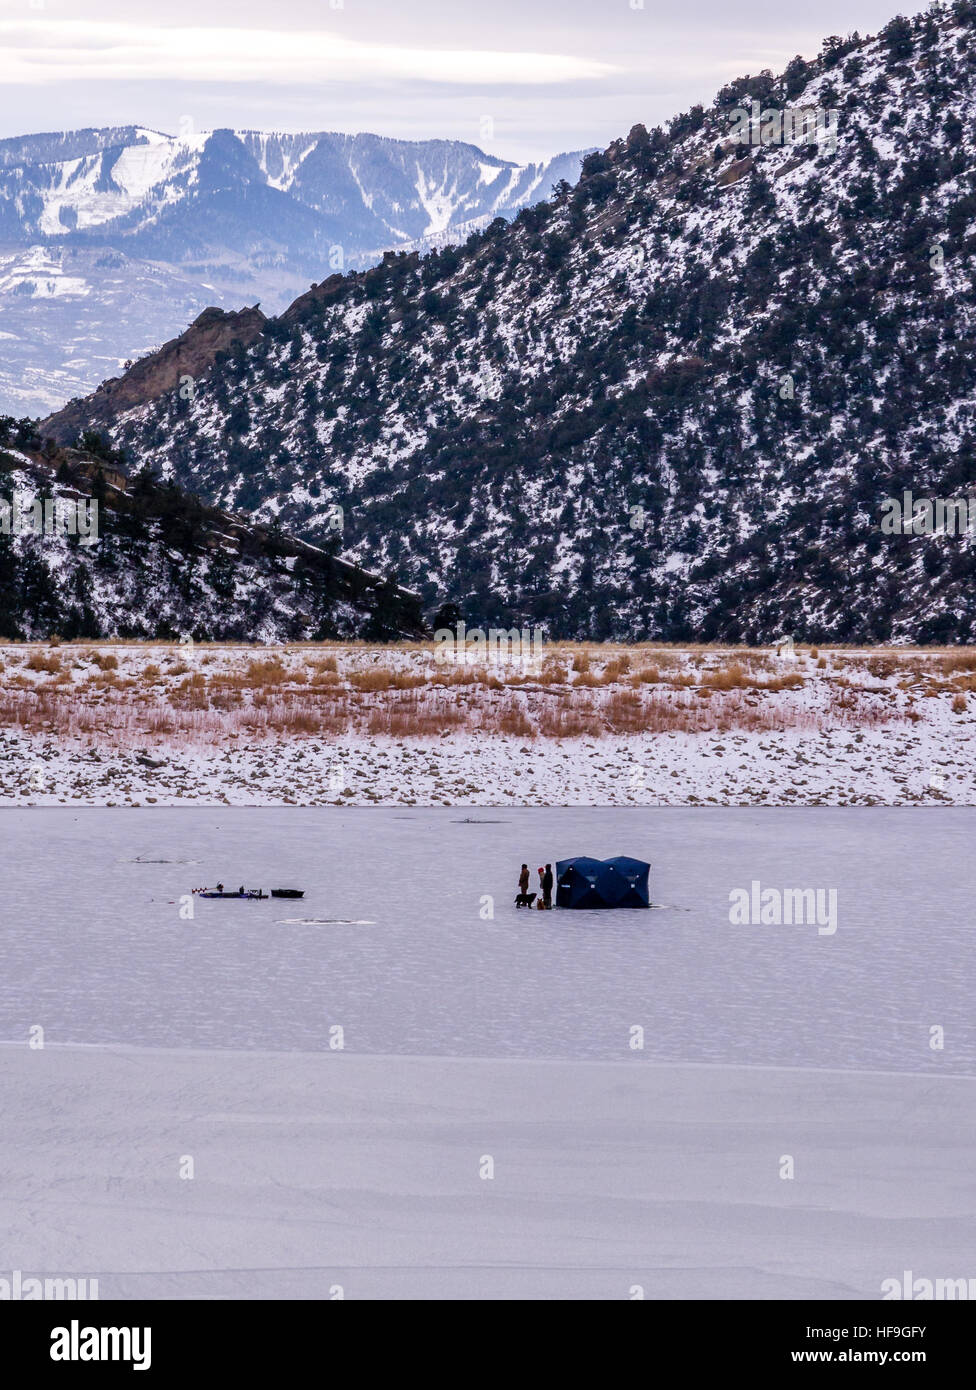 Un gruppo di pescatori di ghiaccio sul lago ghiacciato con il cane, orientamento verticale Foto Stock